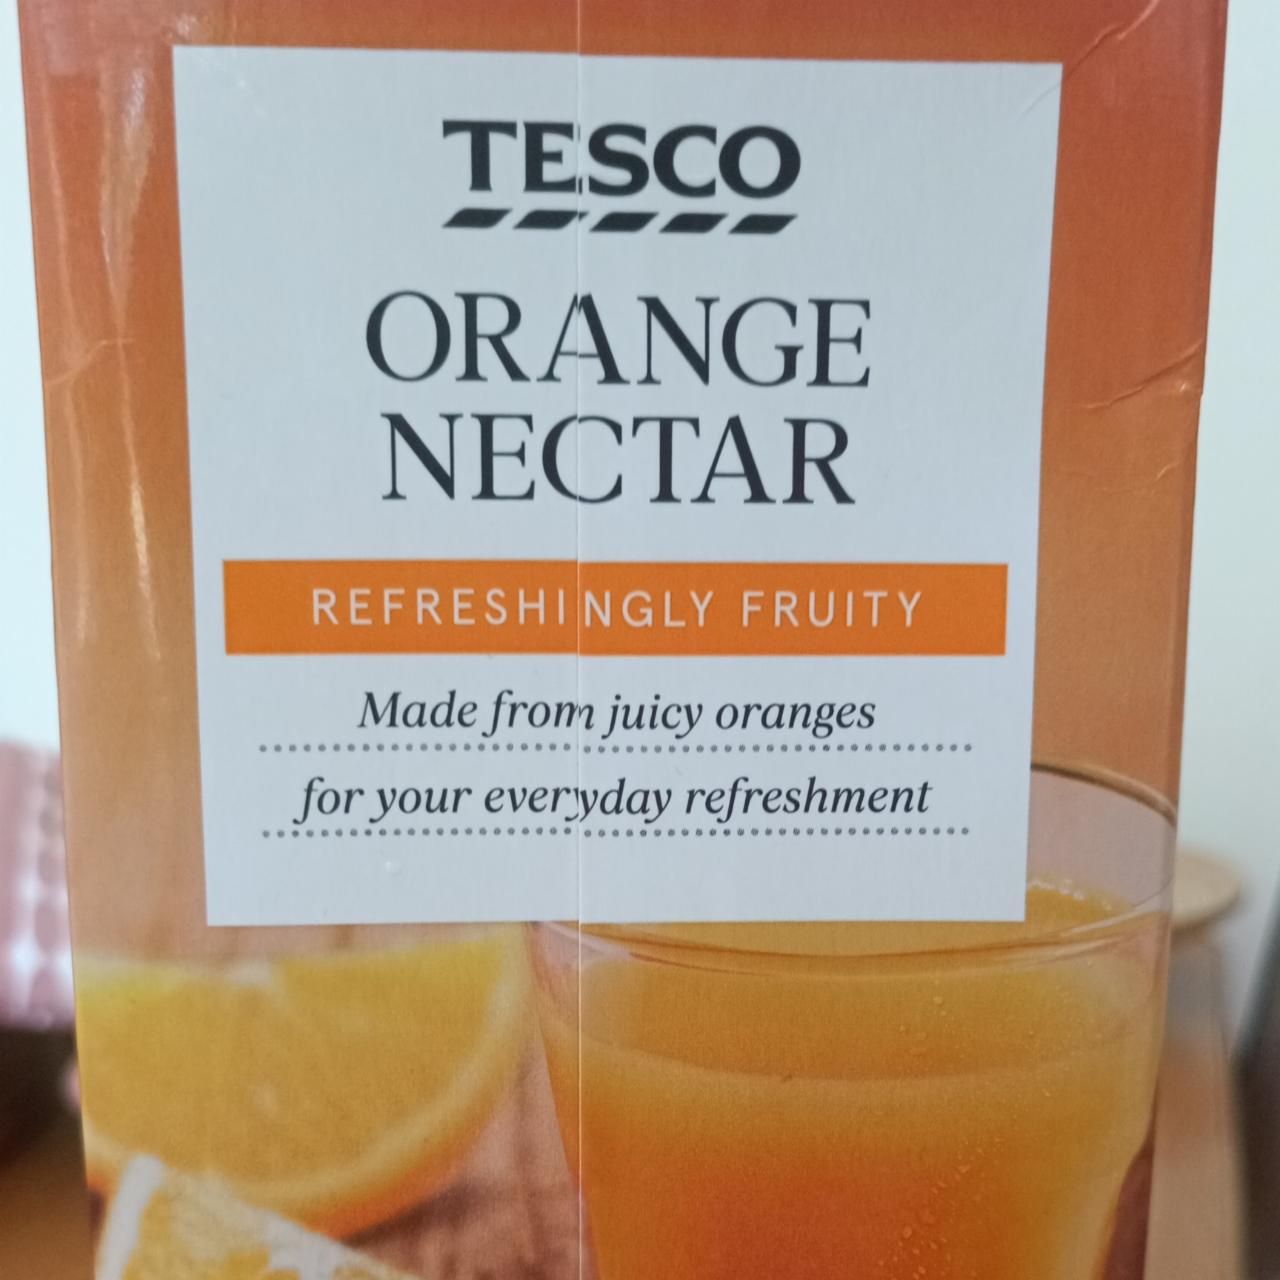 Fotografie - Orange nectar Tesco